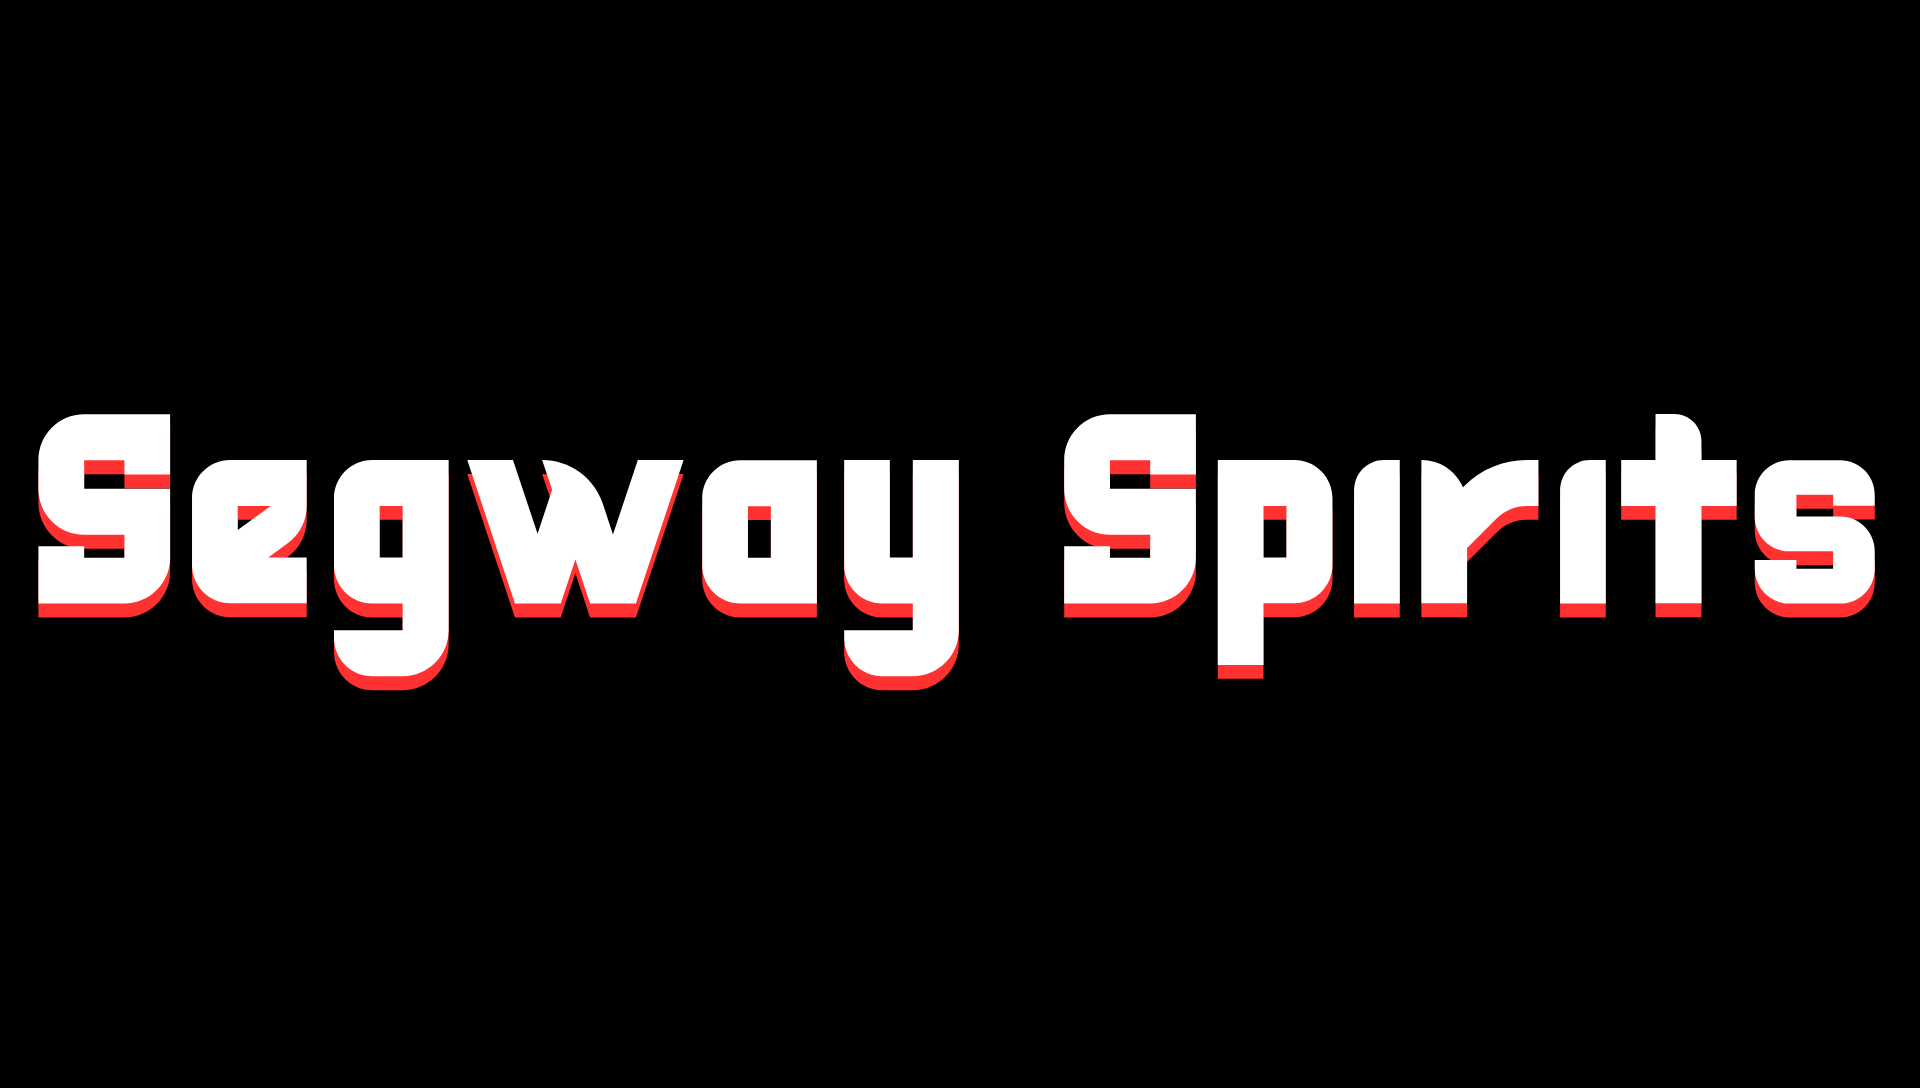 Segway Spirits